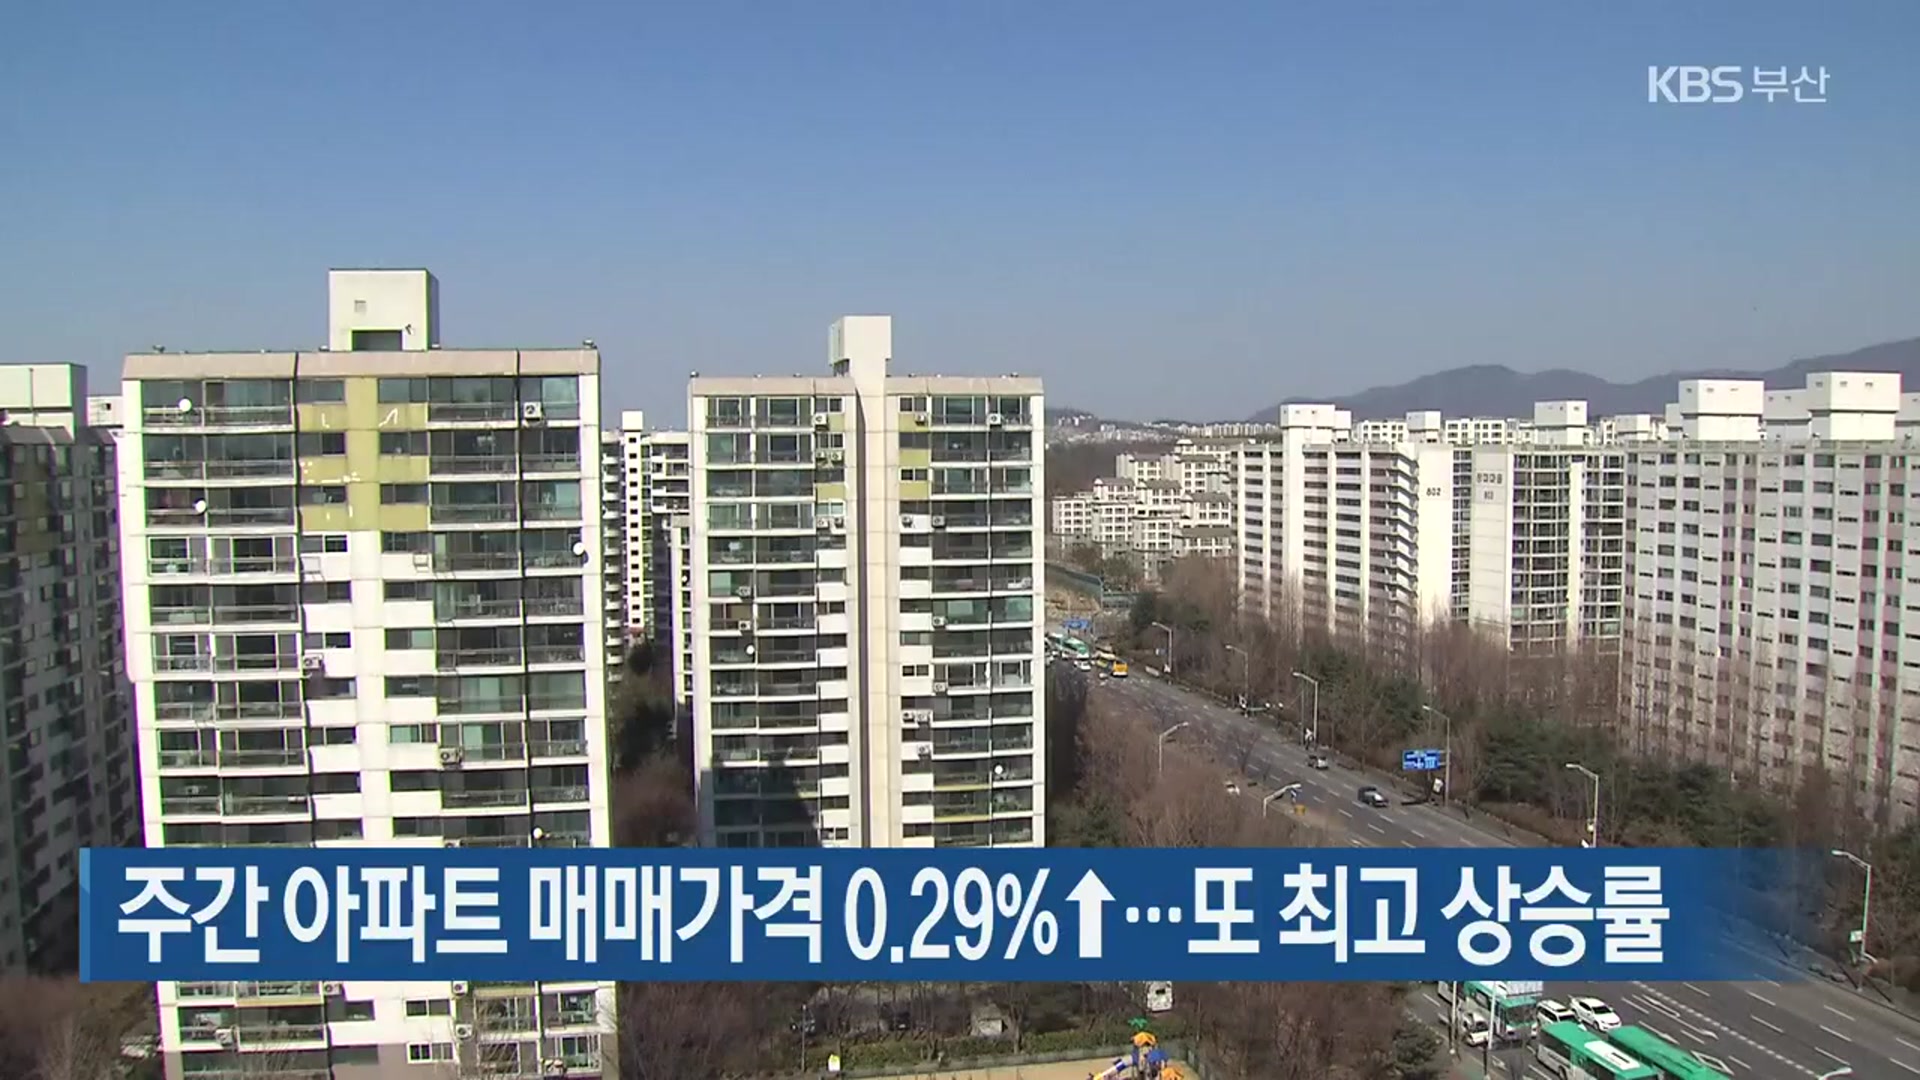 주간 아파트 매매가격 0.29% ↑…또 최고 상승률